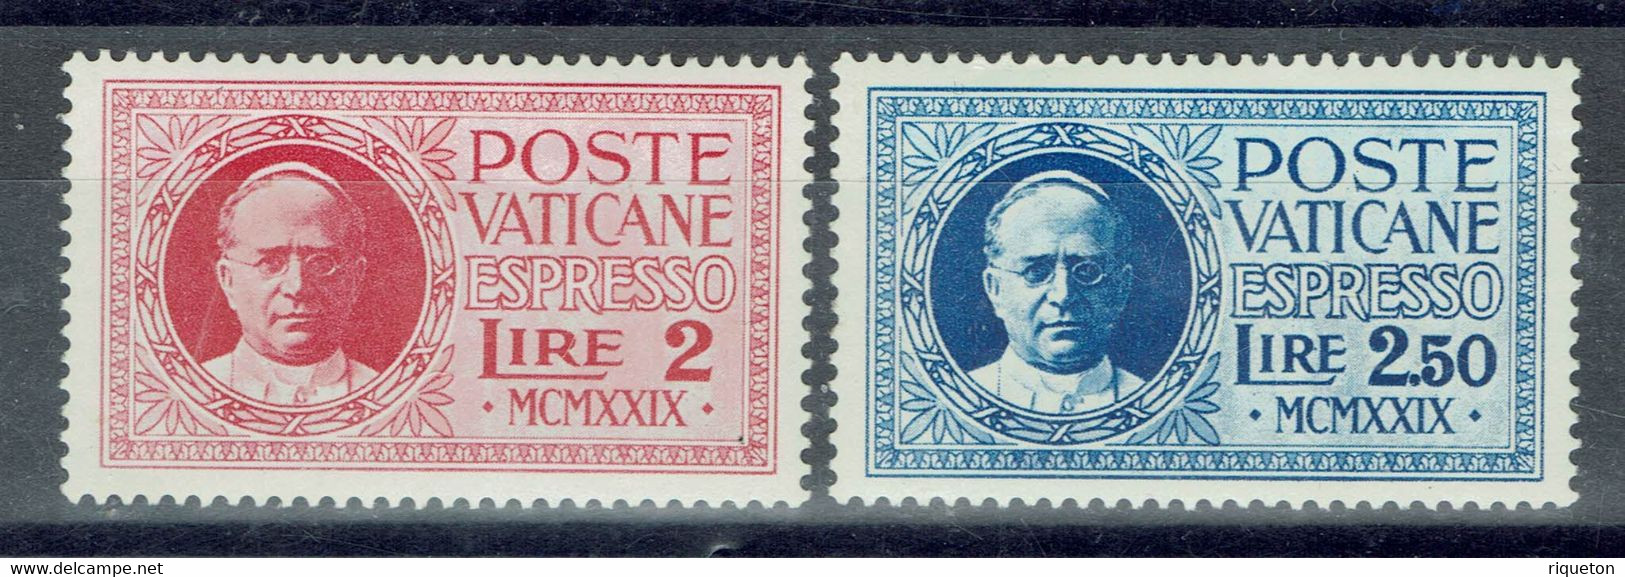 Vatican - 1929 - Timbres Pour Lettres Par Exprès - N° 1 & 2 - Neufs - XX - MNH - - Espresso